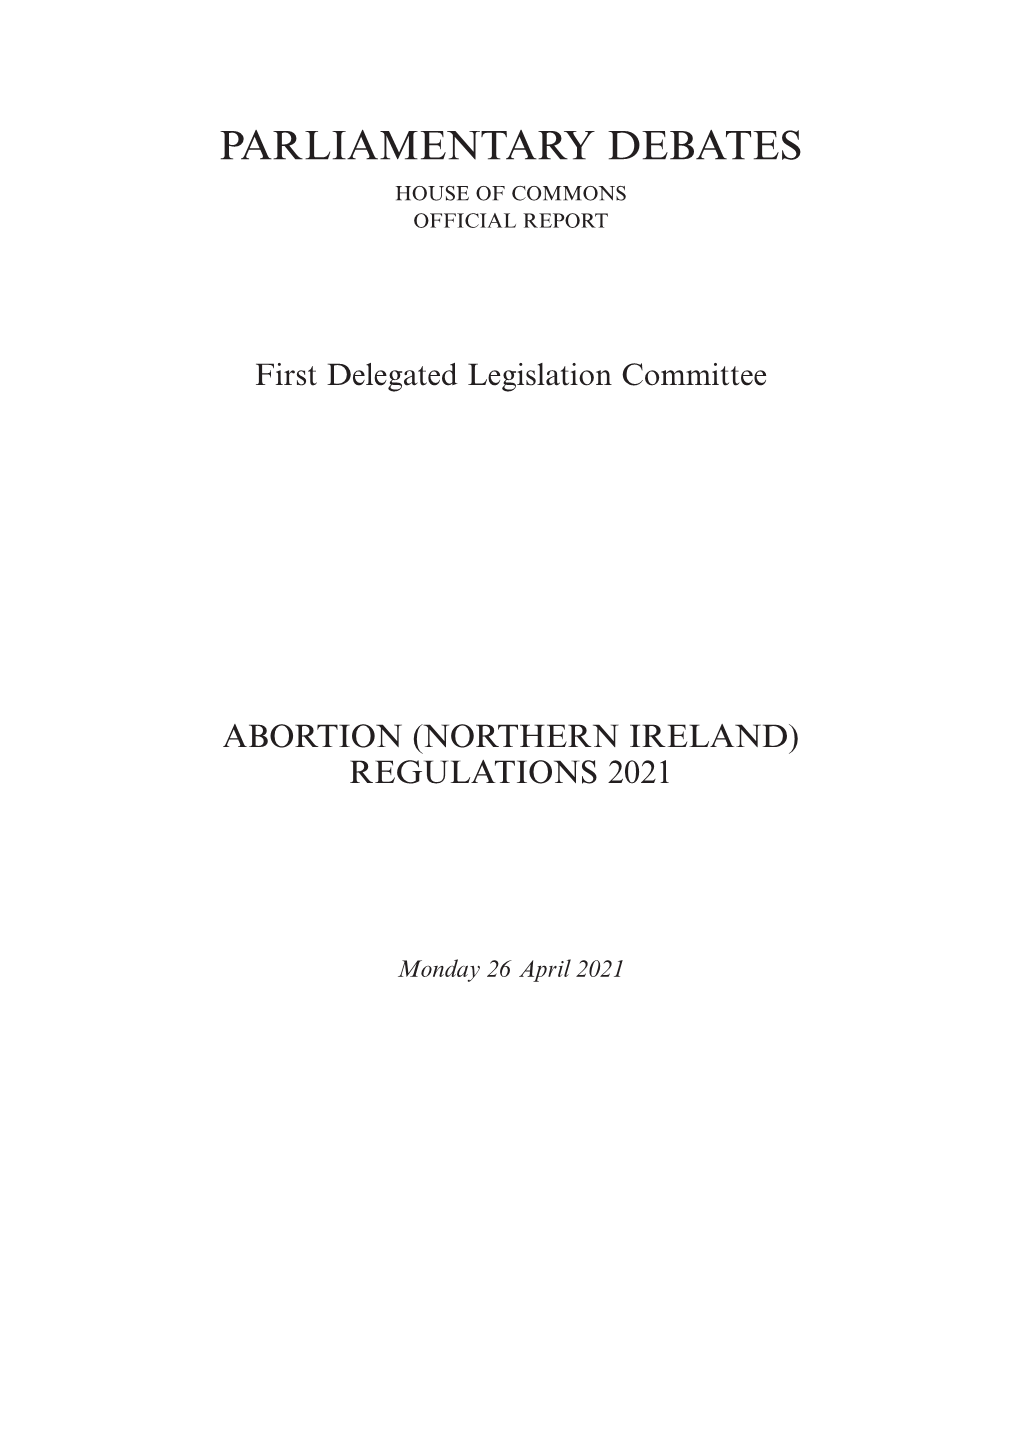 Abortion (Northern Ireland) Regulations 2021